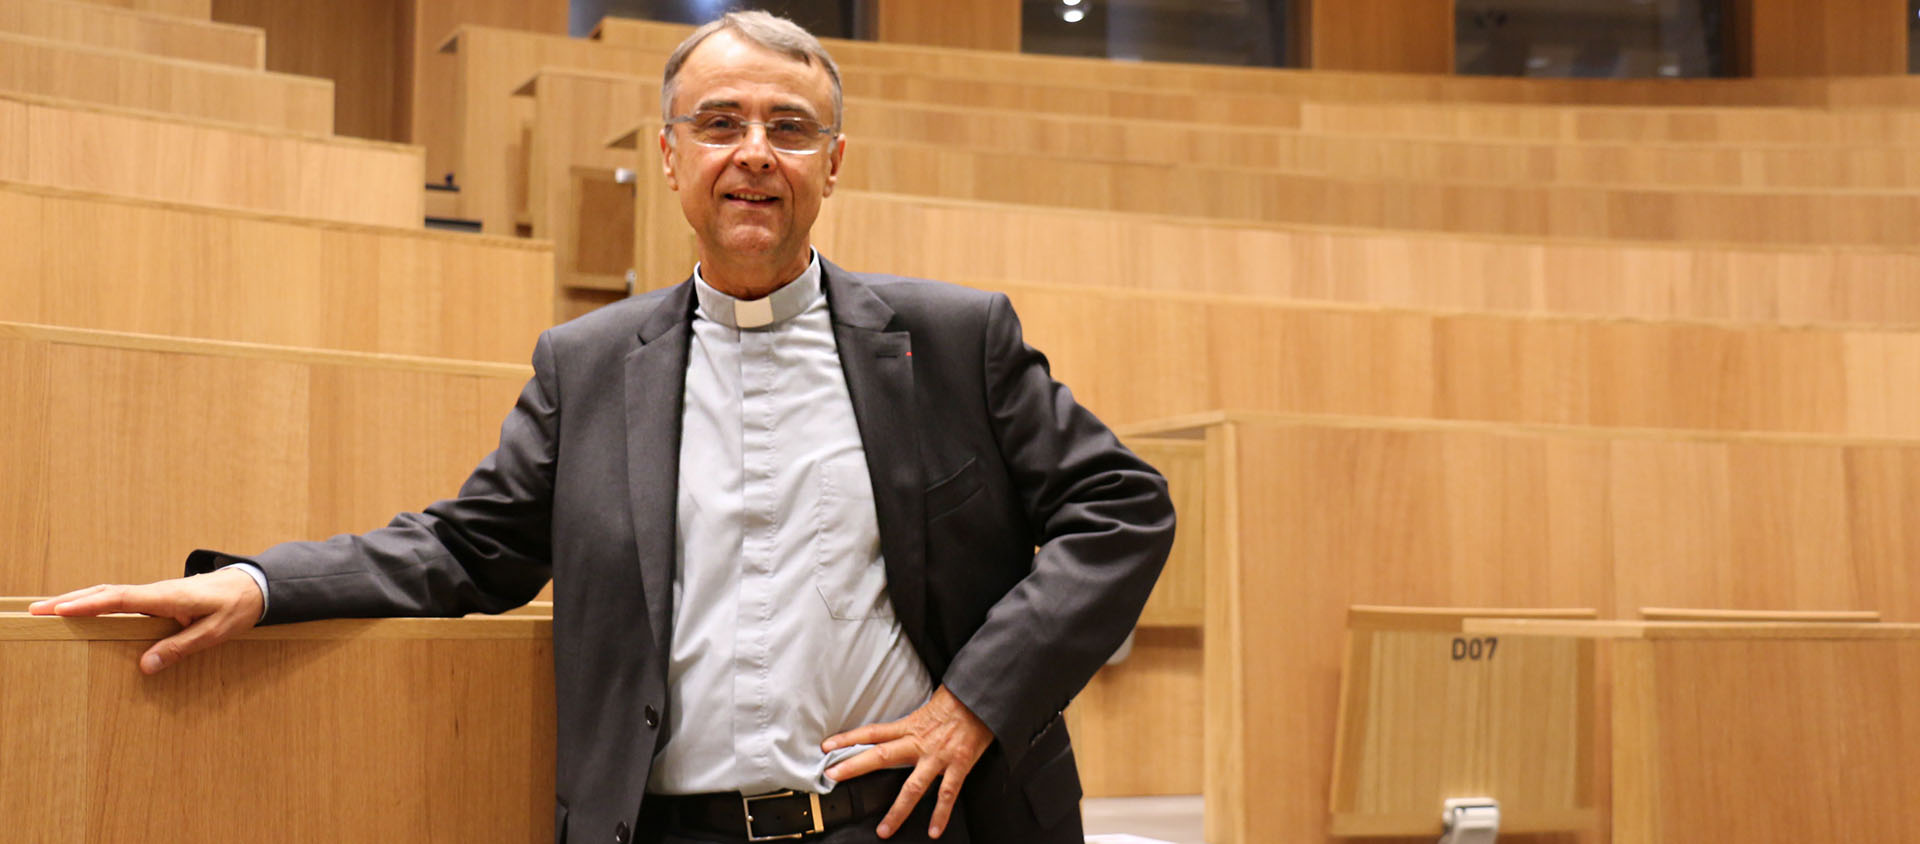 Mgr Philippe Bordeyne démissionne après deux ans passés à la tête de l'institution  | © Grandesecole.com